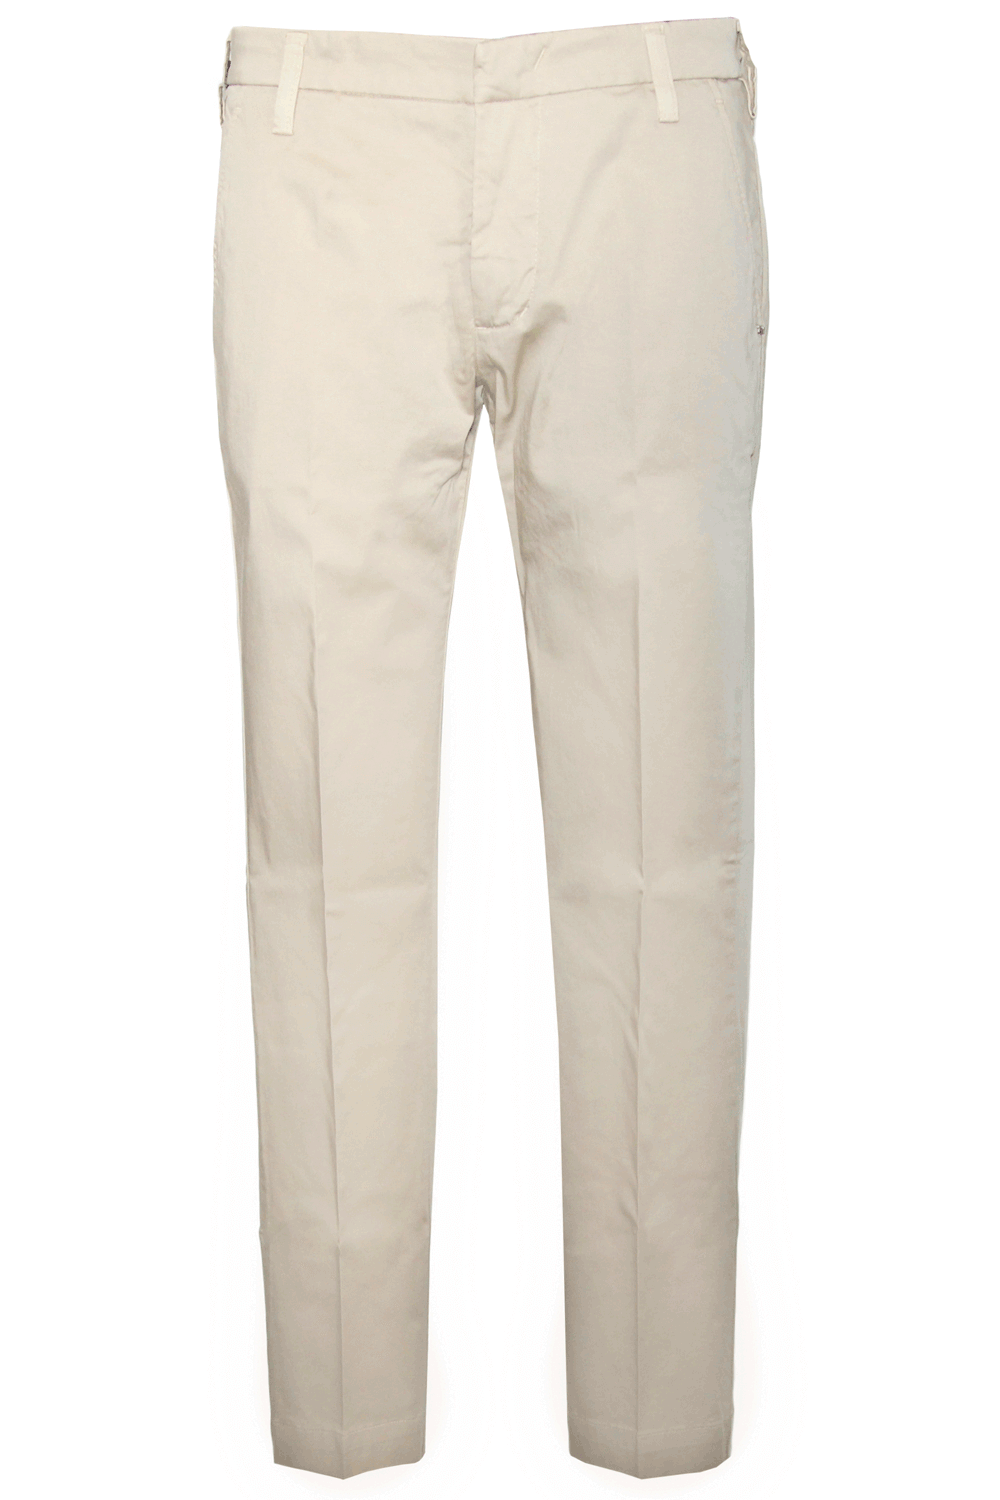 Image of Pantalone chiaro in cotone- ENTRE AMIS